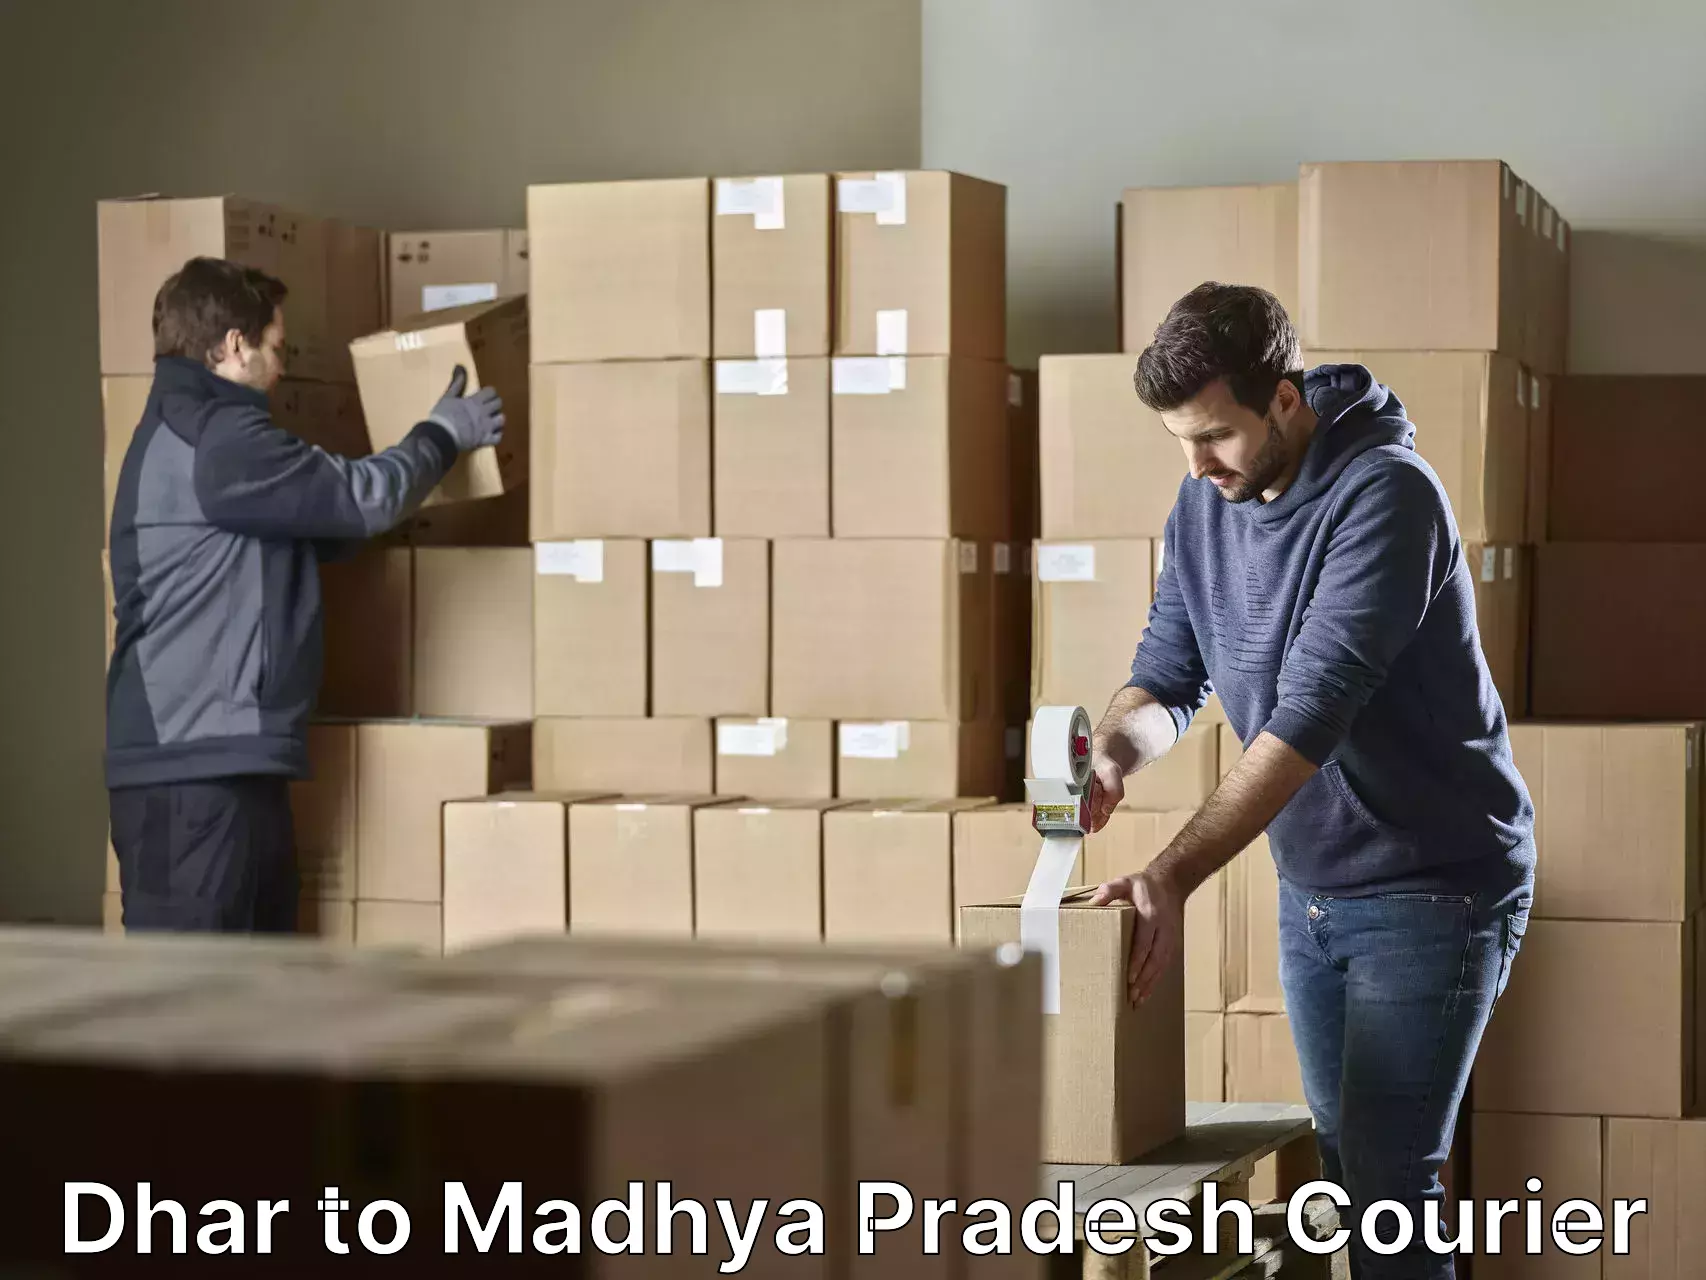 Furniture moving experts Dhar to Madhya Pradesh